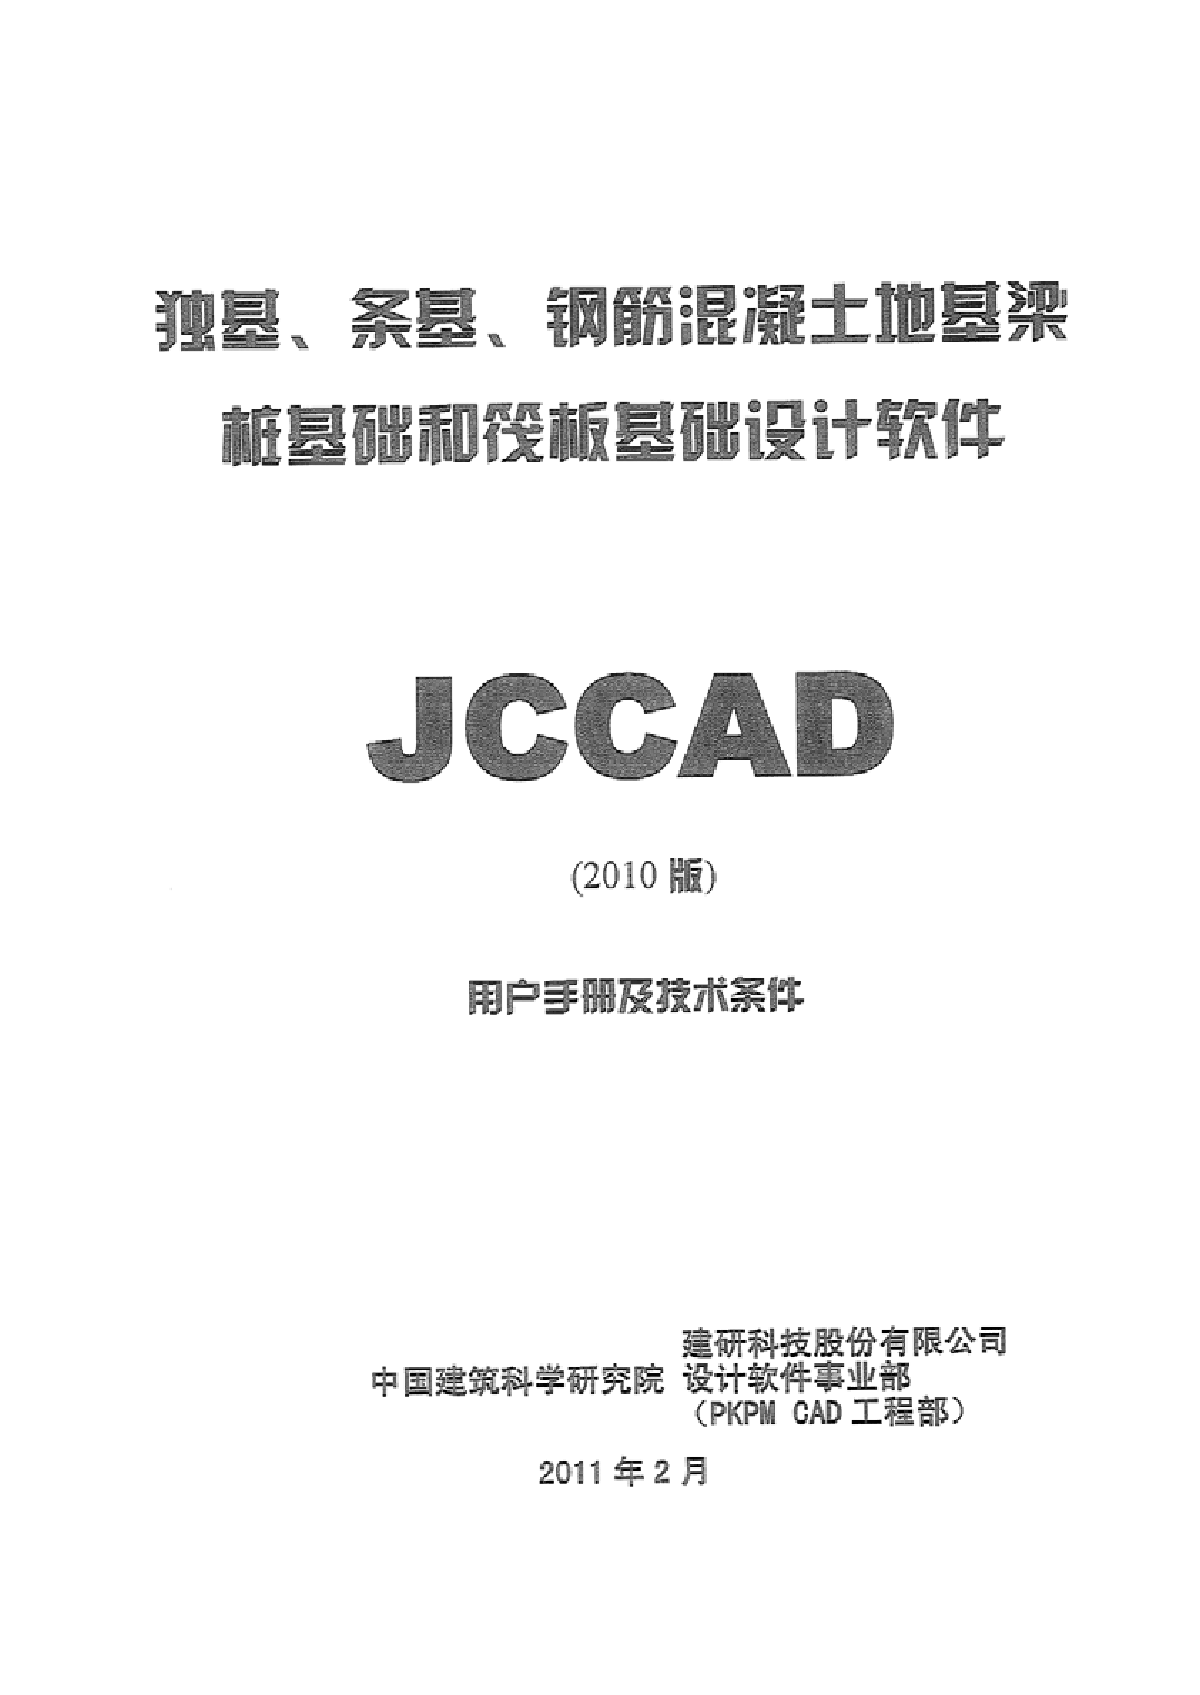  PKPM2010 User Manual - JCCAD - Figure 1